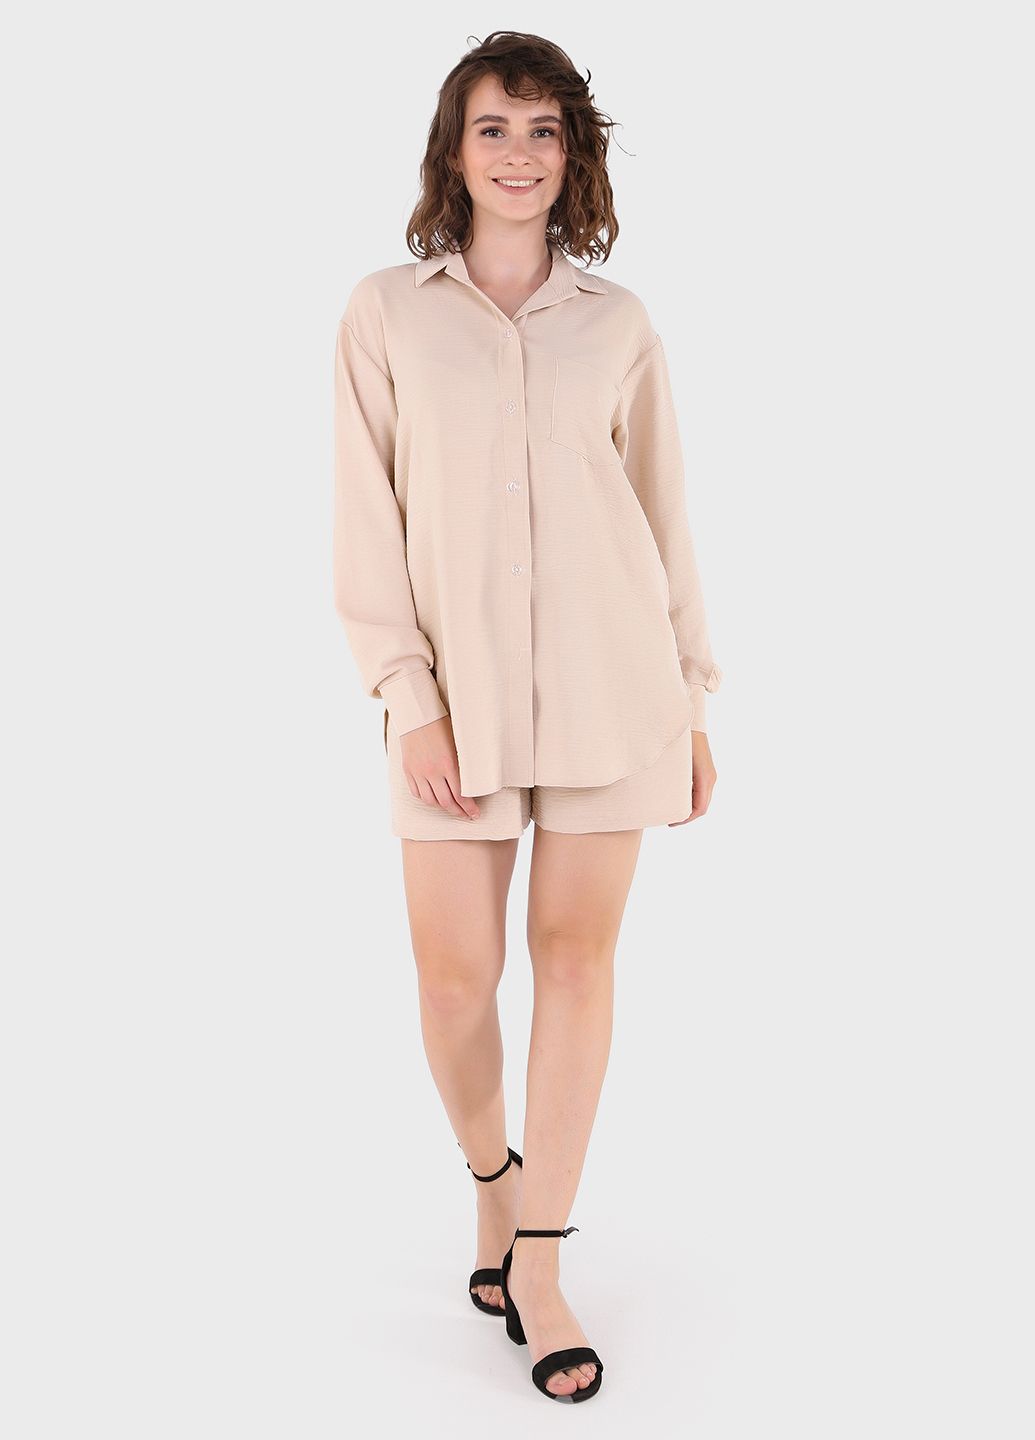 Купить Модный летний костюм женский бежевого цвета Merlini Лето 100000134, размер 46-48 в интернет-магазине